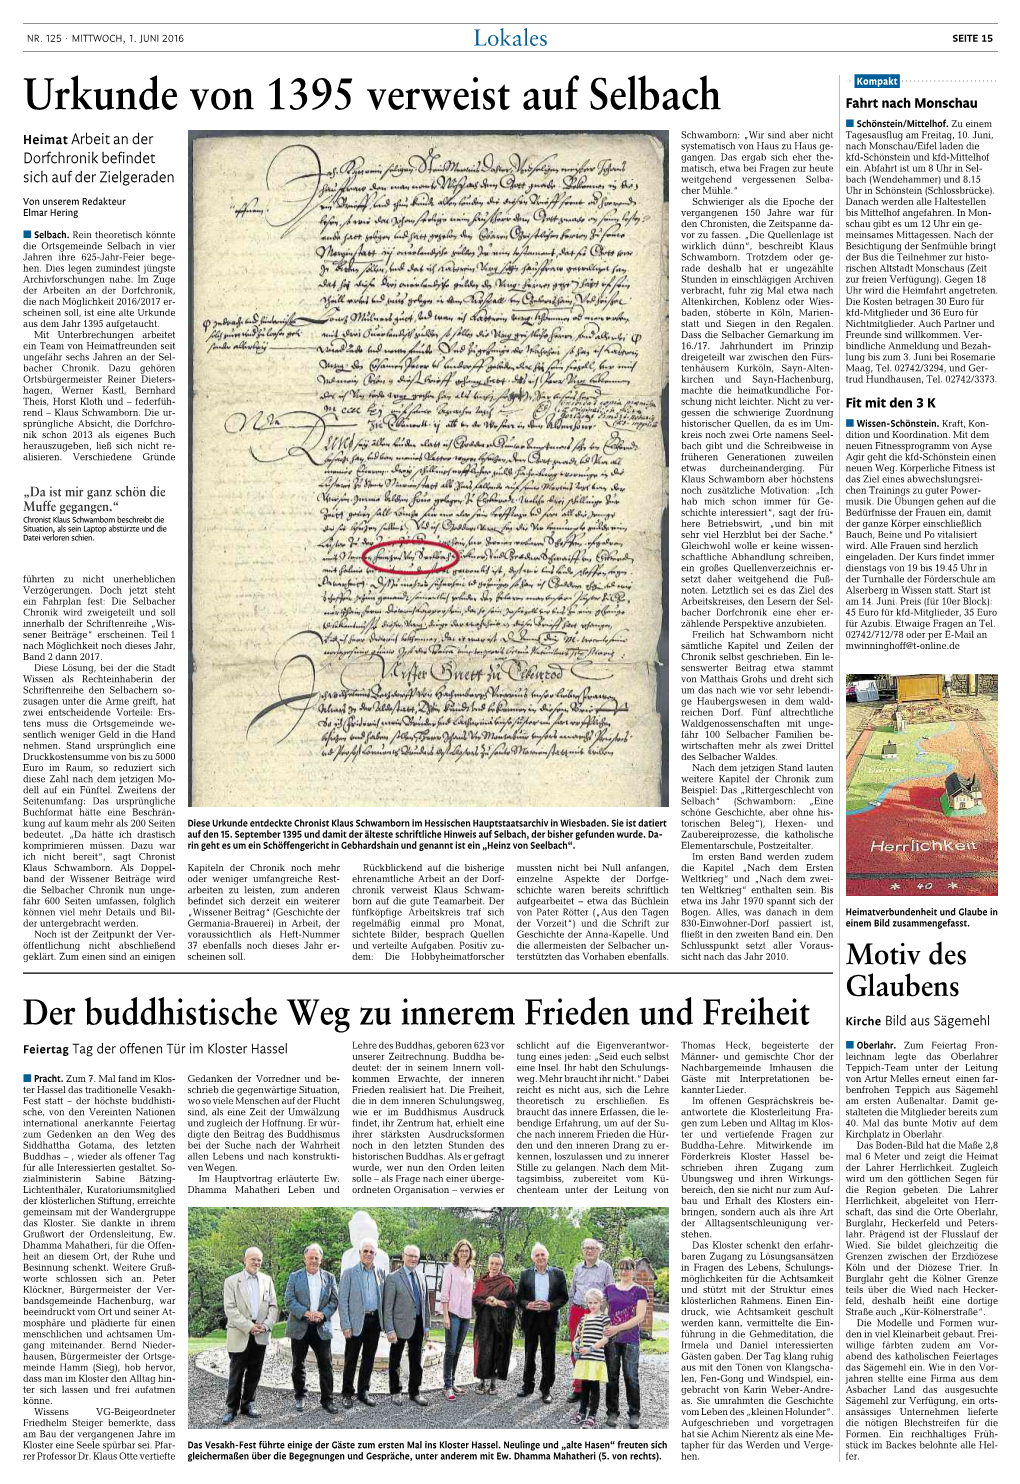 Urkunde Von 1395 Verweist Auf Selbach Fahrt Nach Monschau M Schönstein/Mittelhof